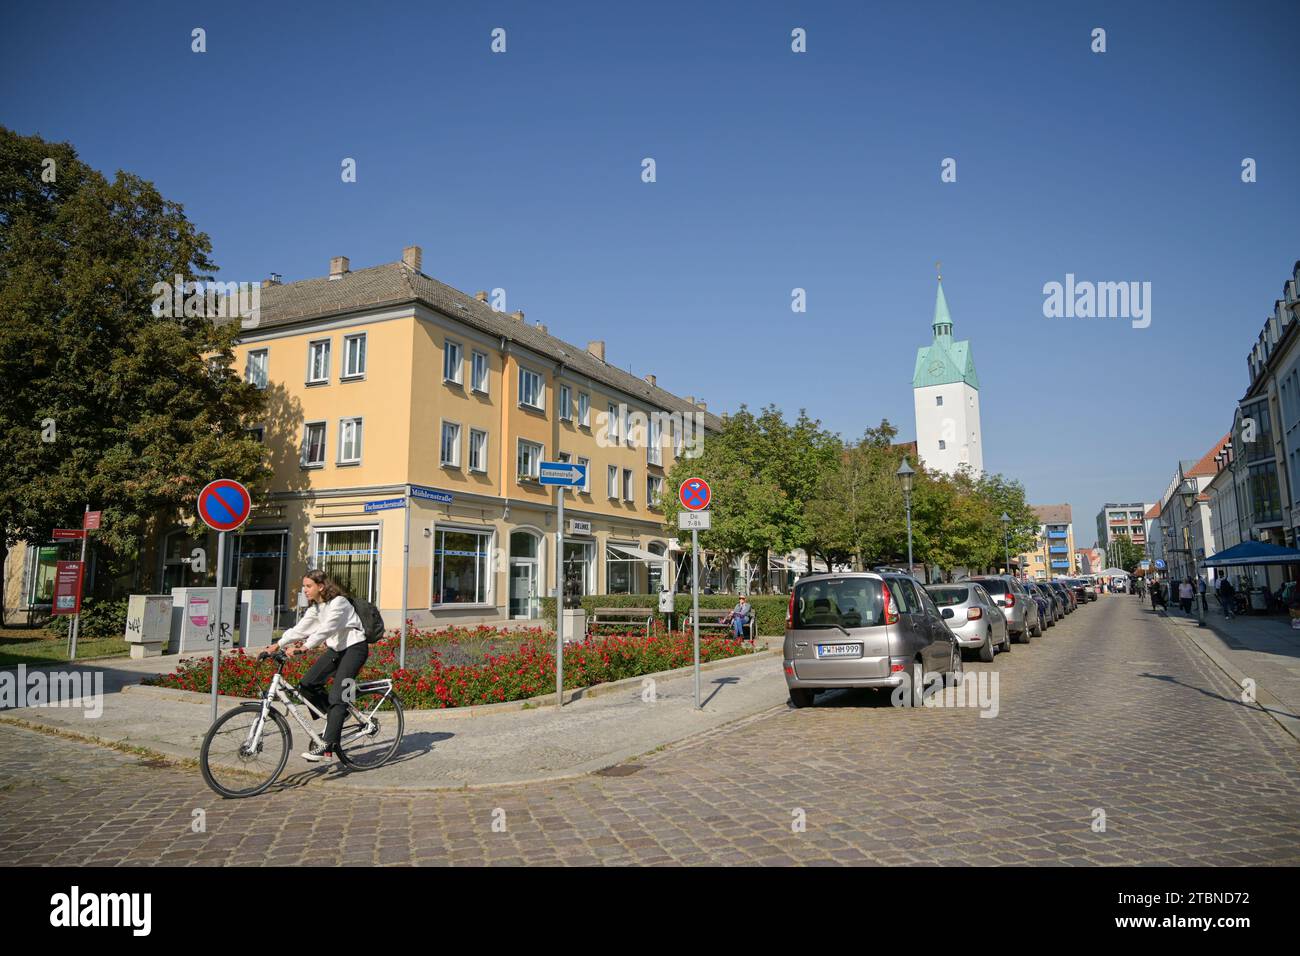 Straßenszene, Mühlenstraße, Altstadt, Fürstenwalde, Landkreis Oder-Spree, Brandenburg, Deutschland Stock Photo